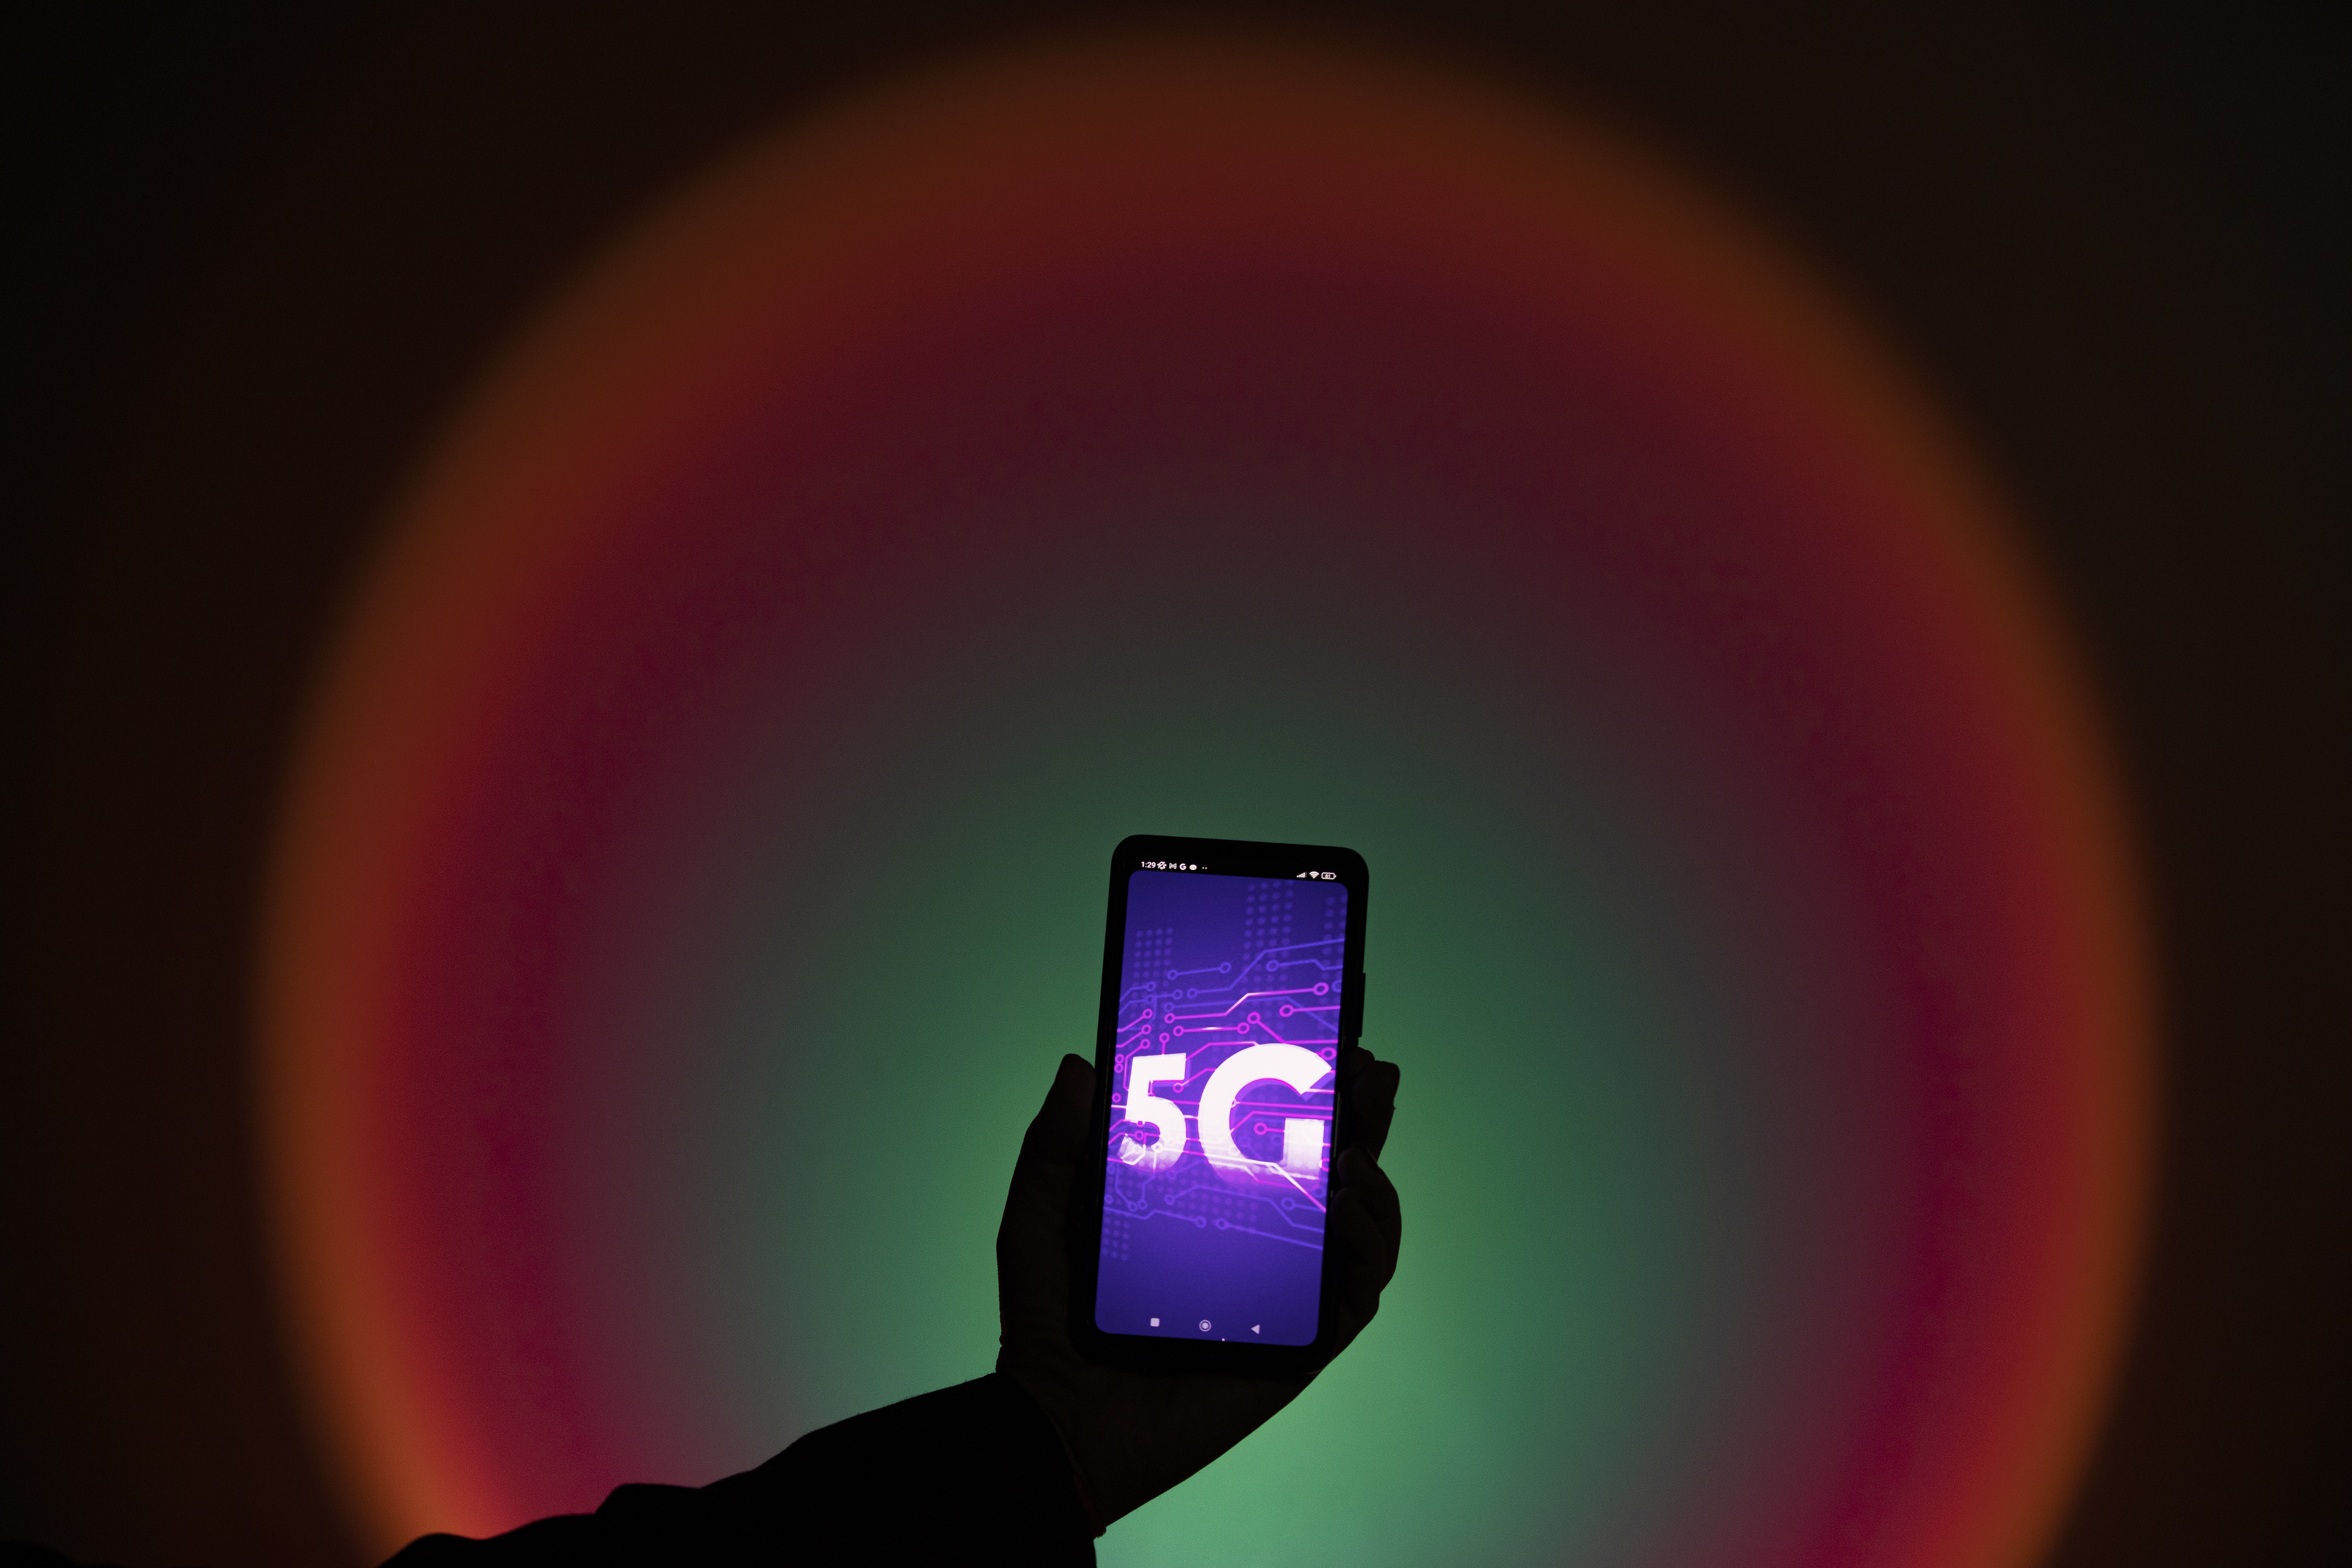 Economía convoca el concurso del 5G rural marcado por el veto a Huawei